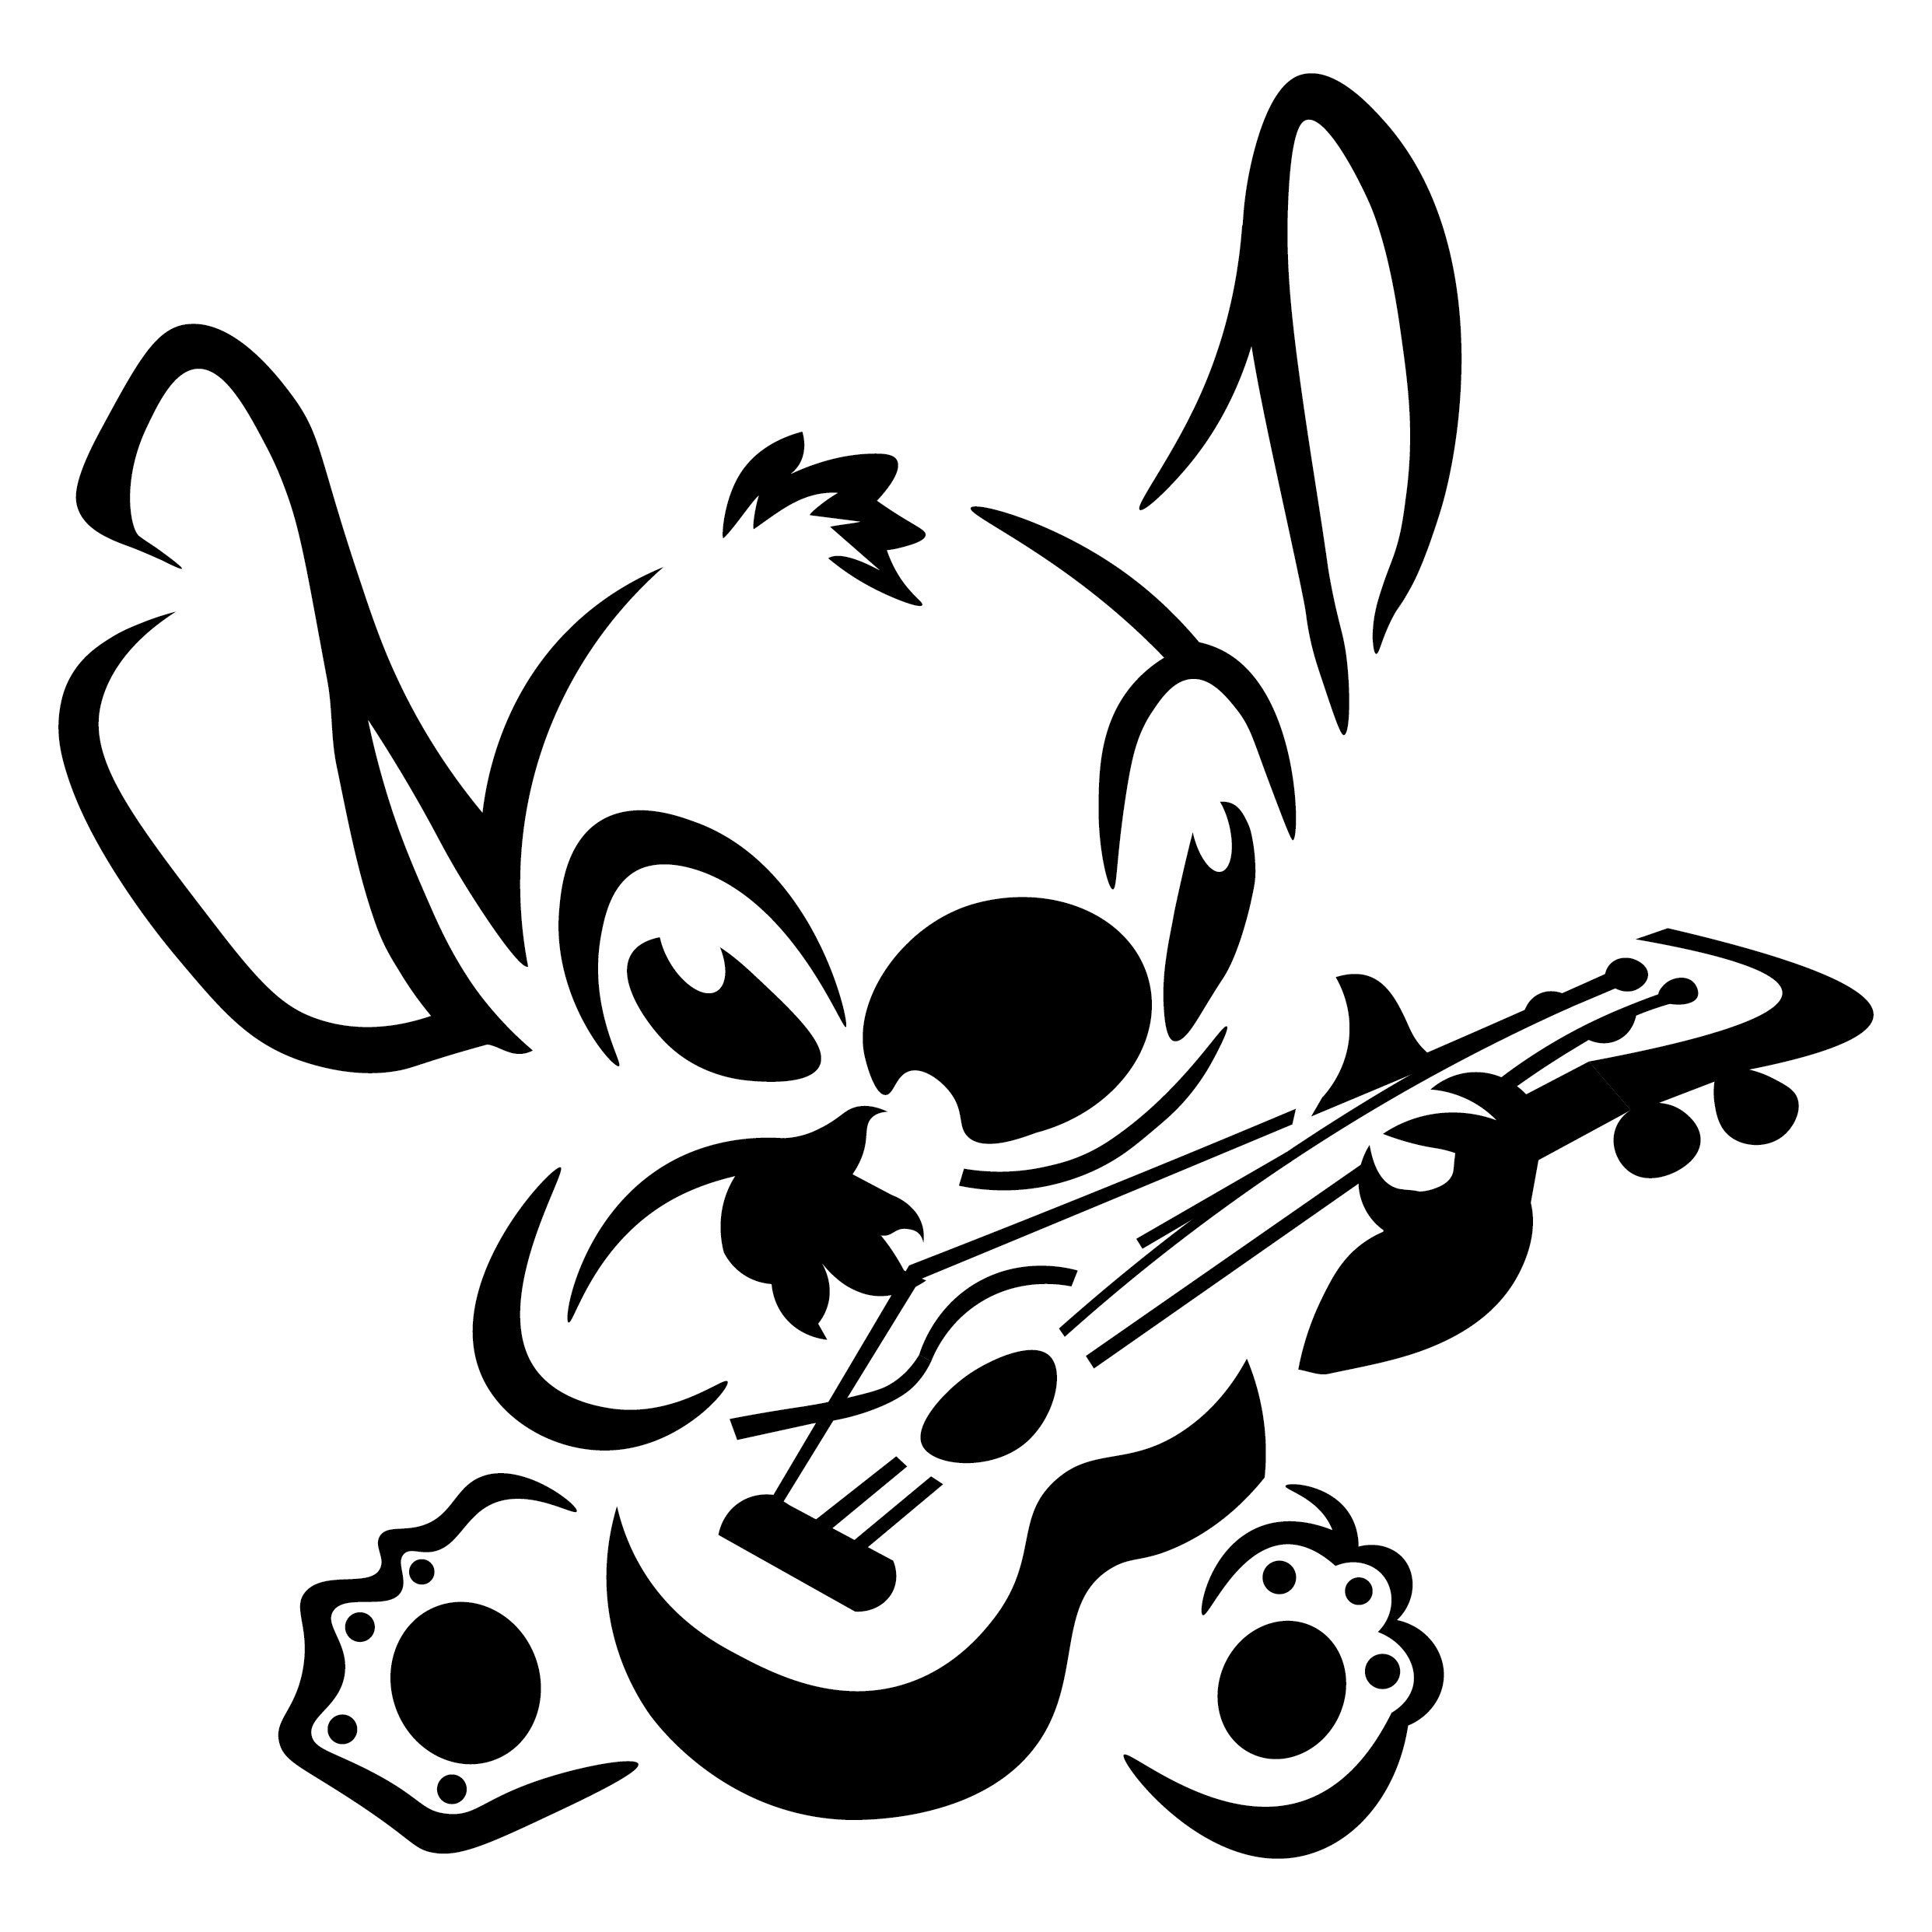 Download Stitch clipart ukulele, Stitch ukulele Transparent FREE ...